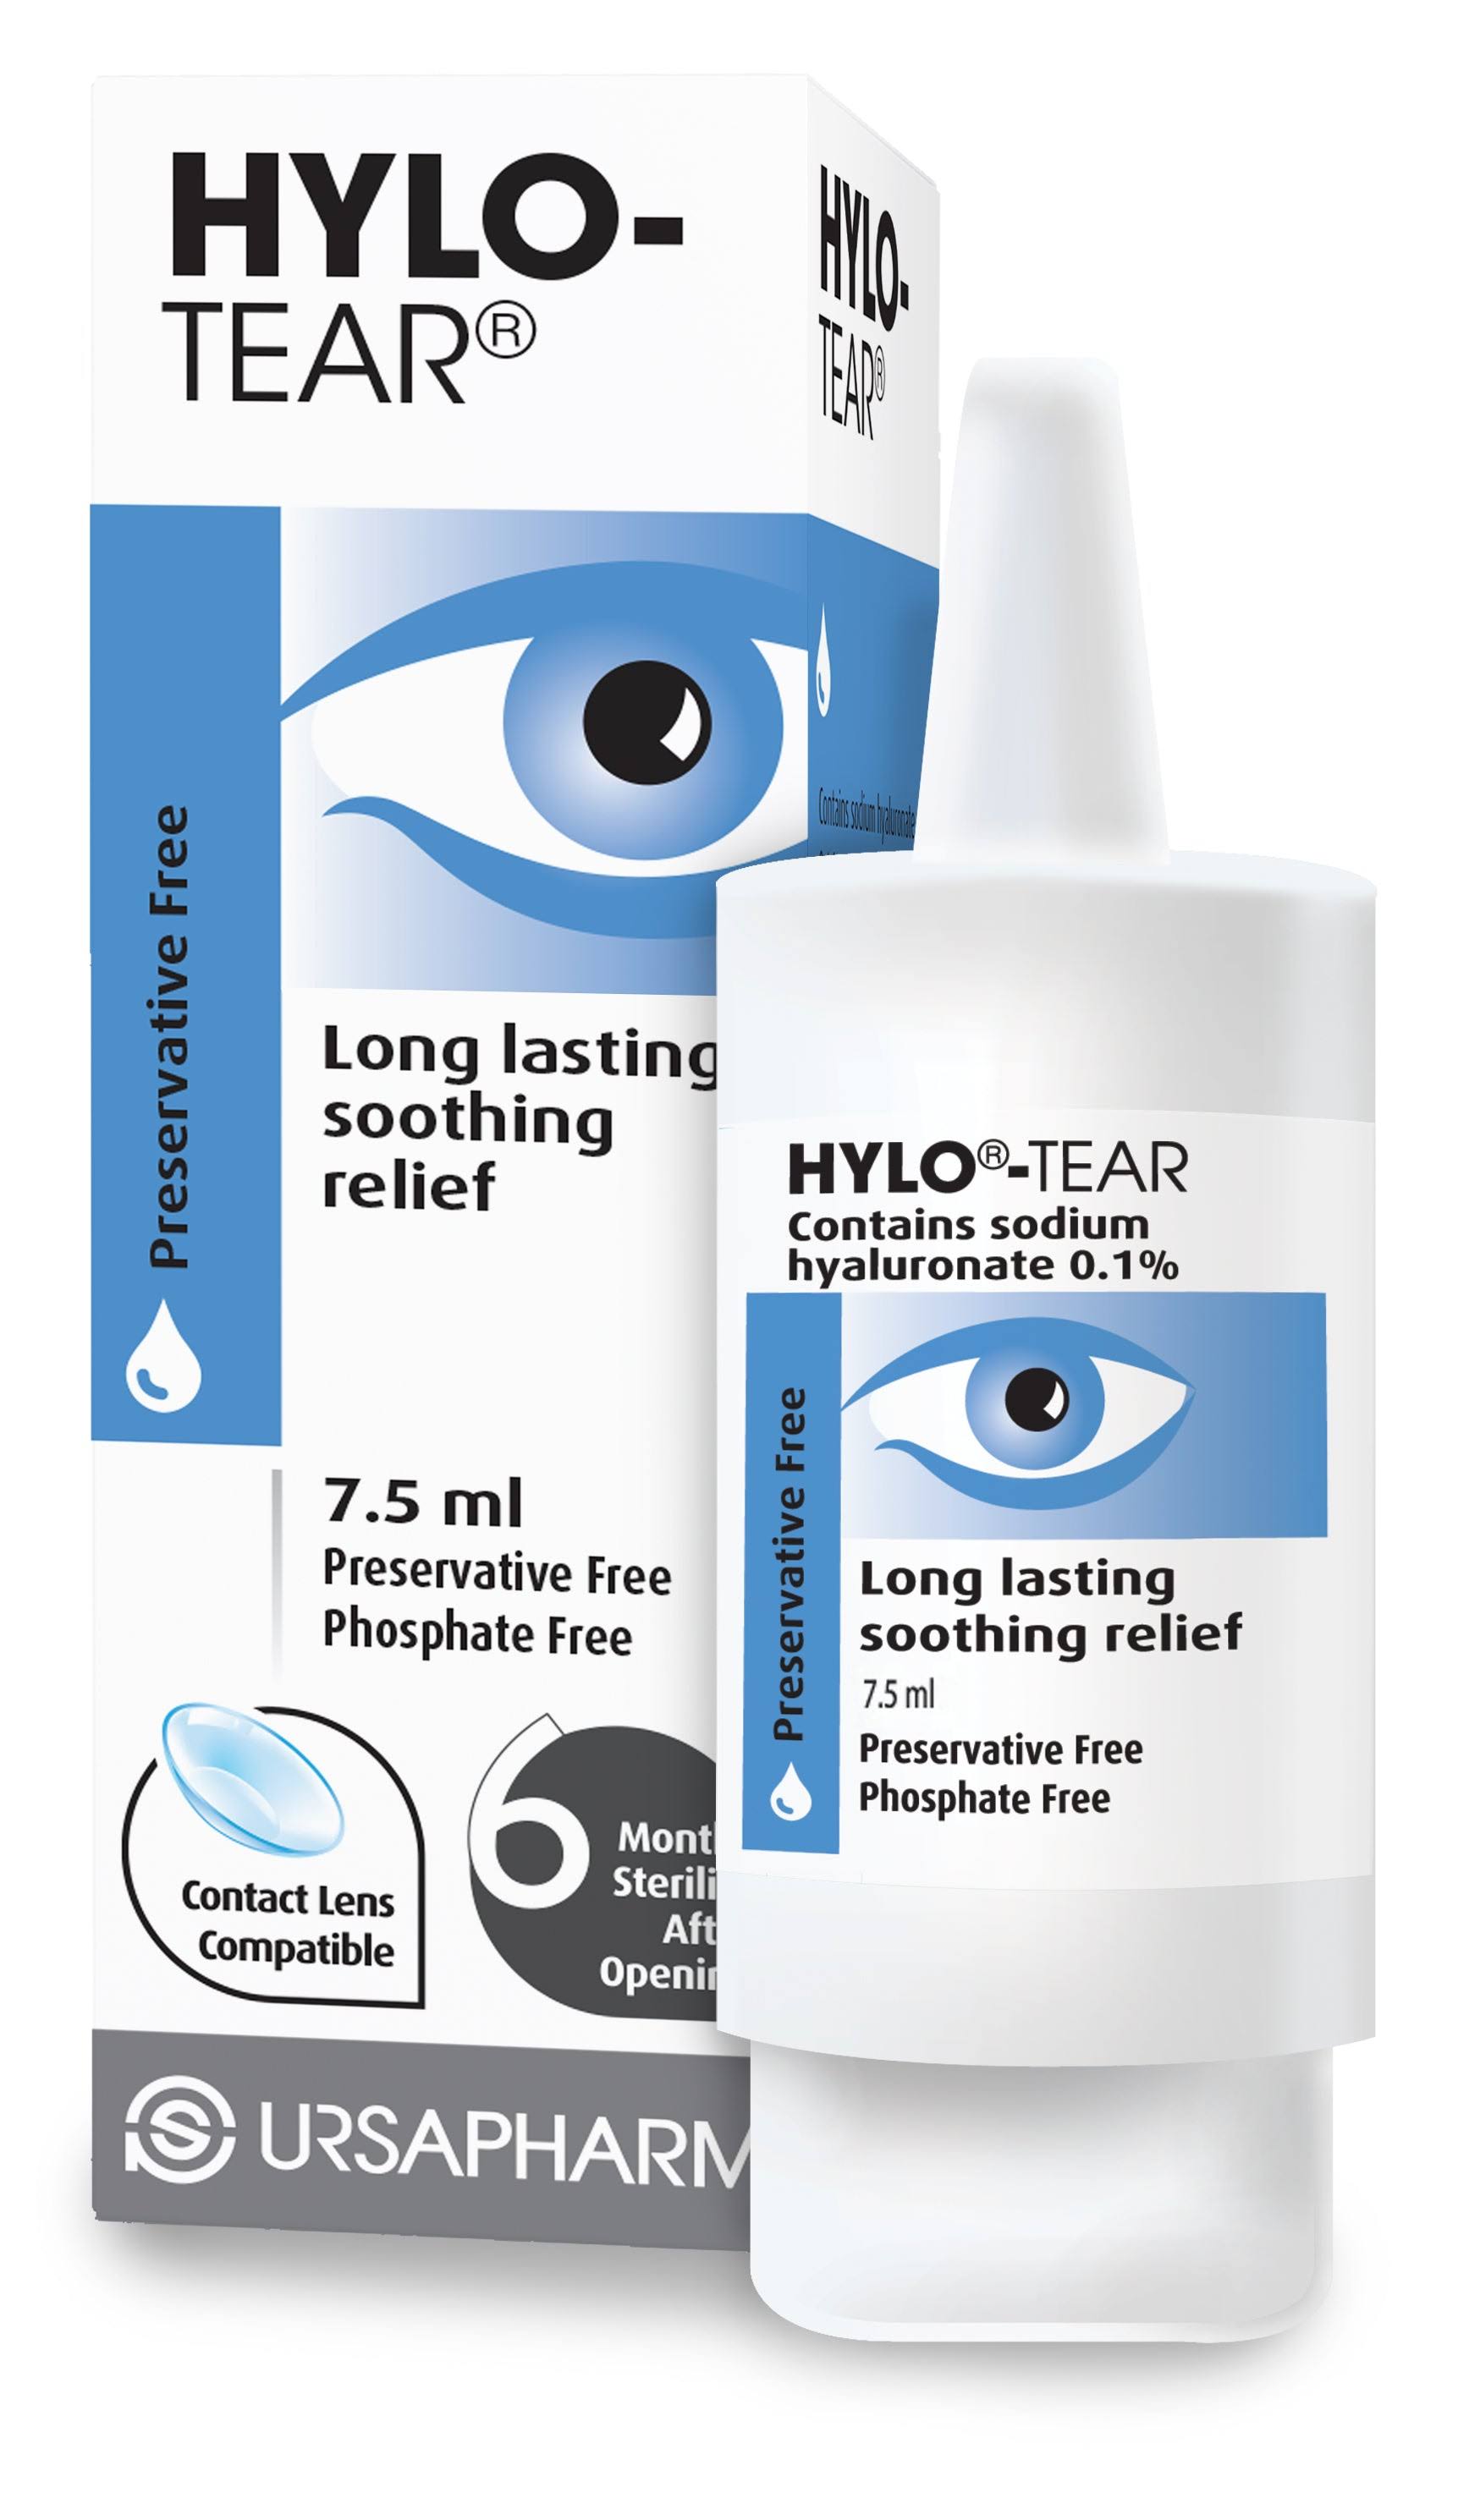 Eye Drops - HyloTear Eye Drops 10ml